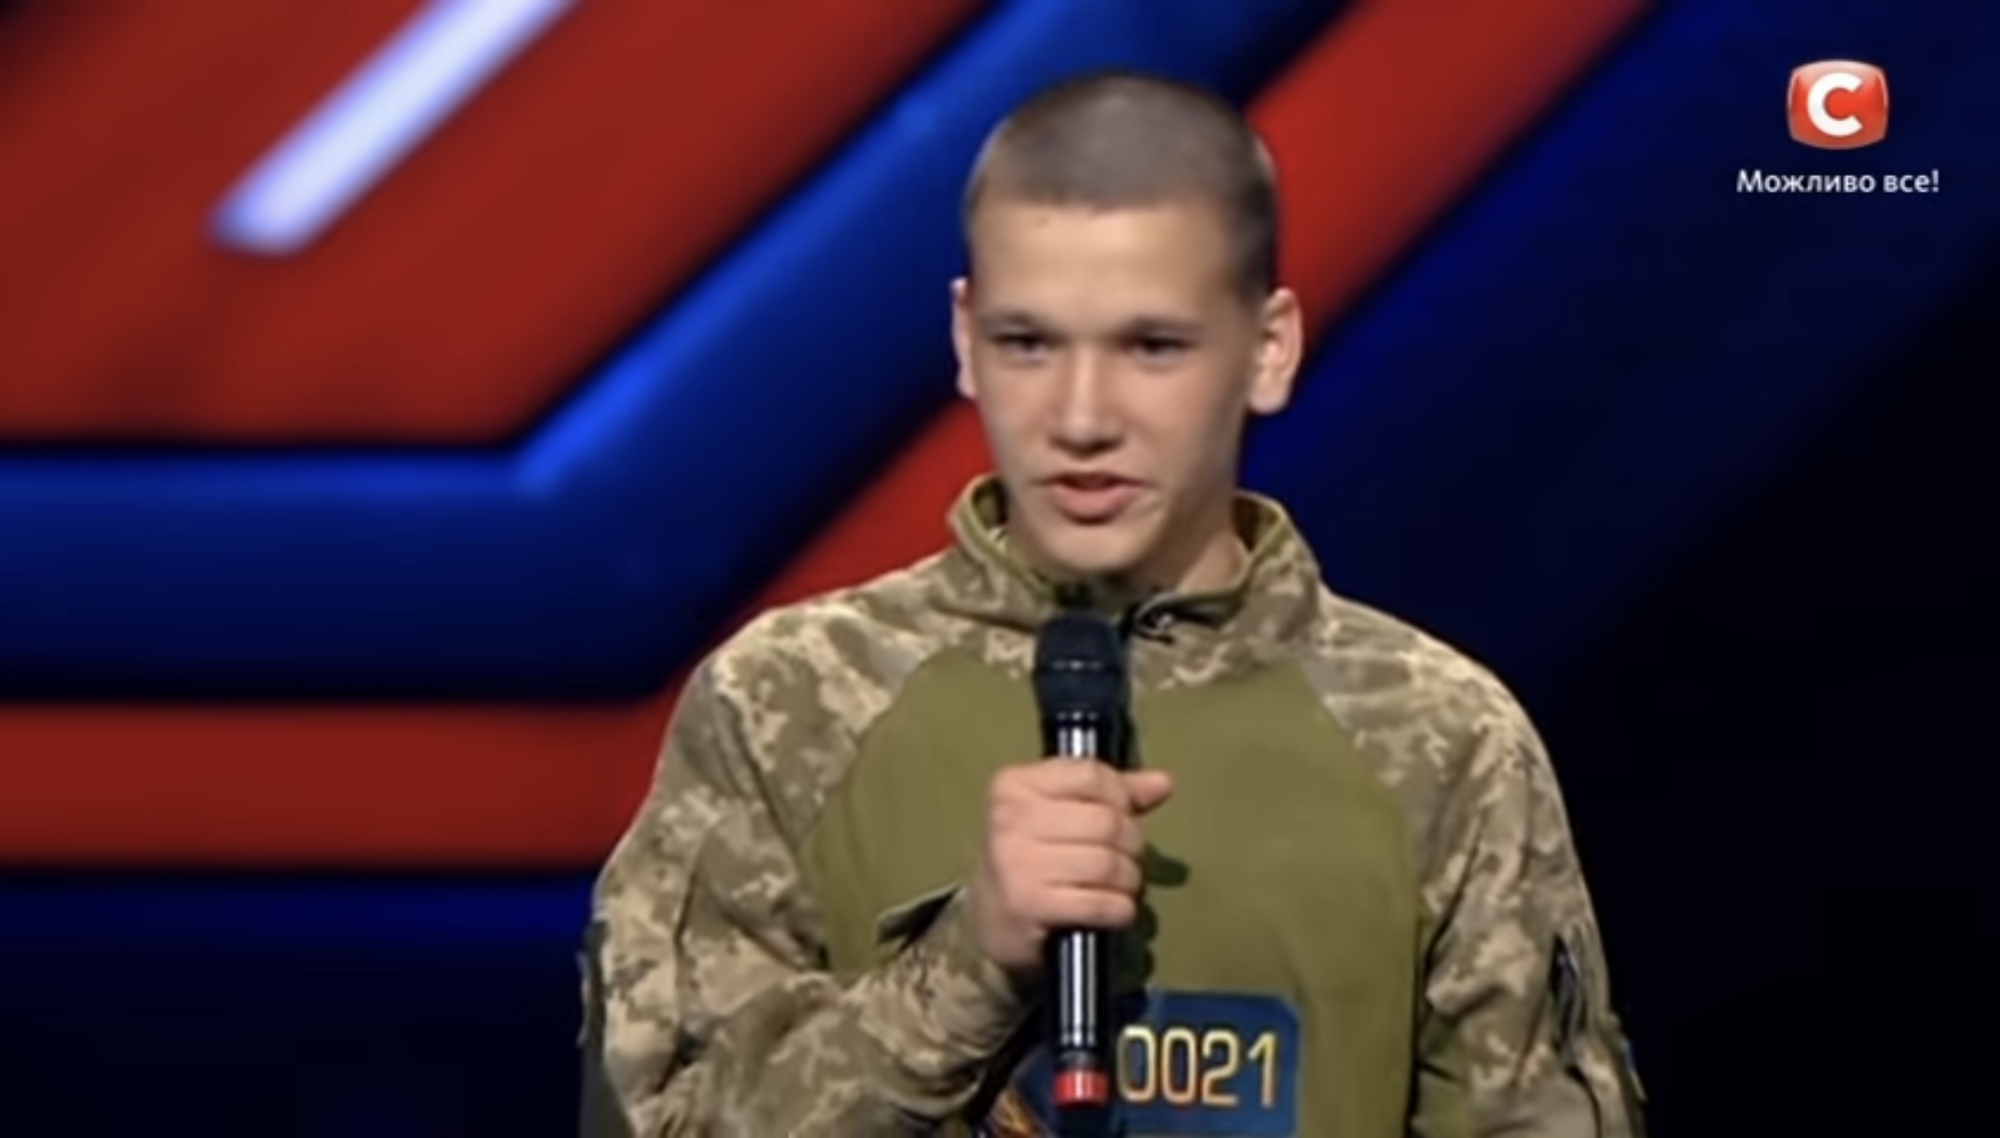 Впервые на передовой побывал в 13 лет: в боях за Украину погиб участник Х-фактора, который сам писал песни. Фото